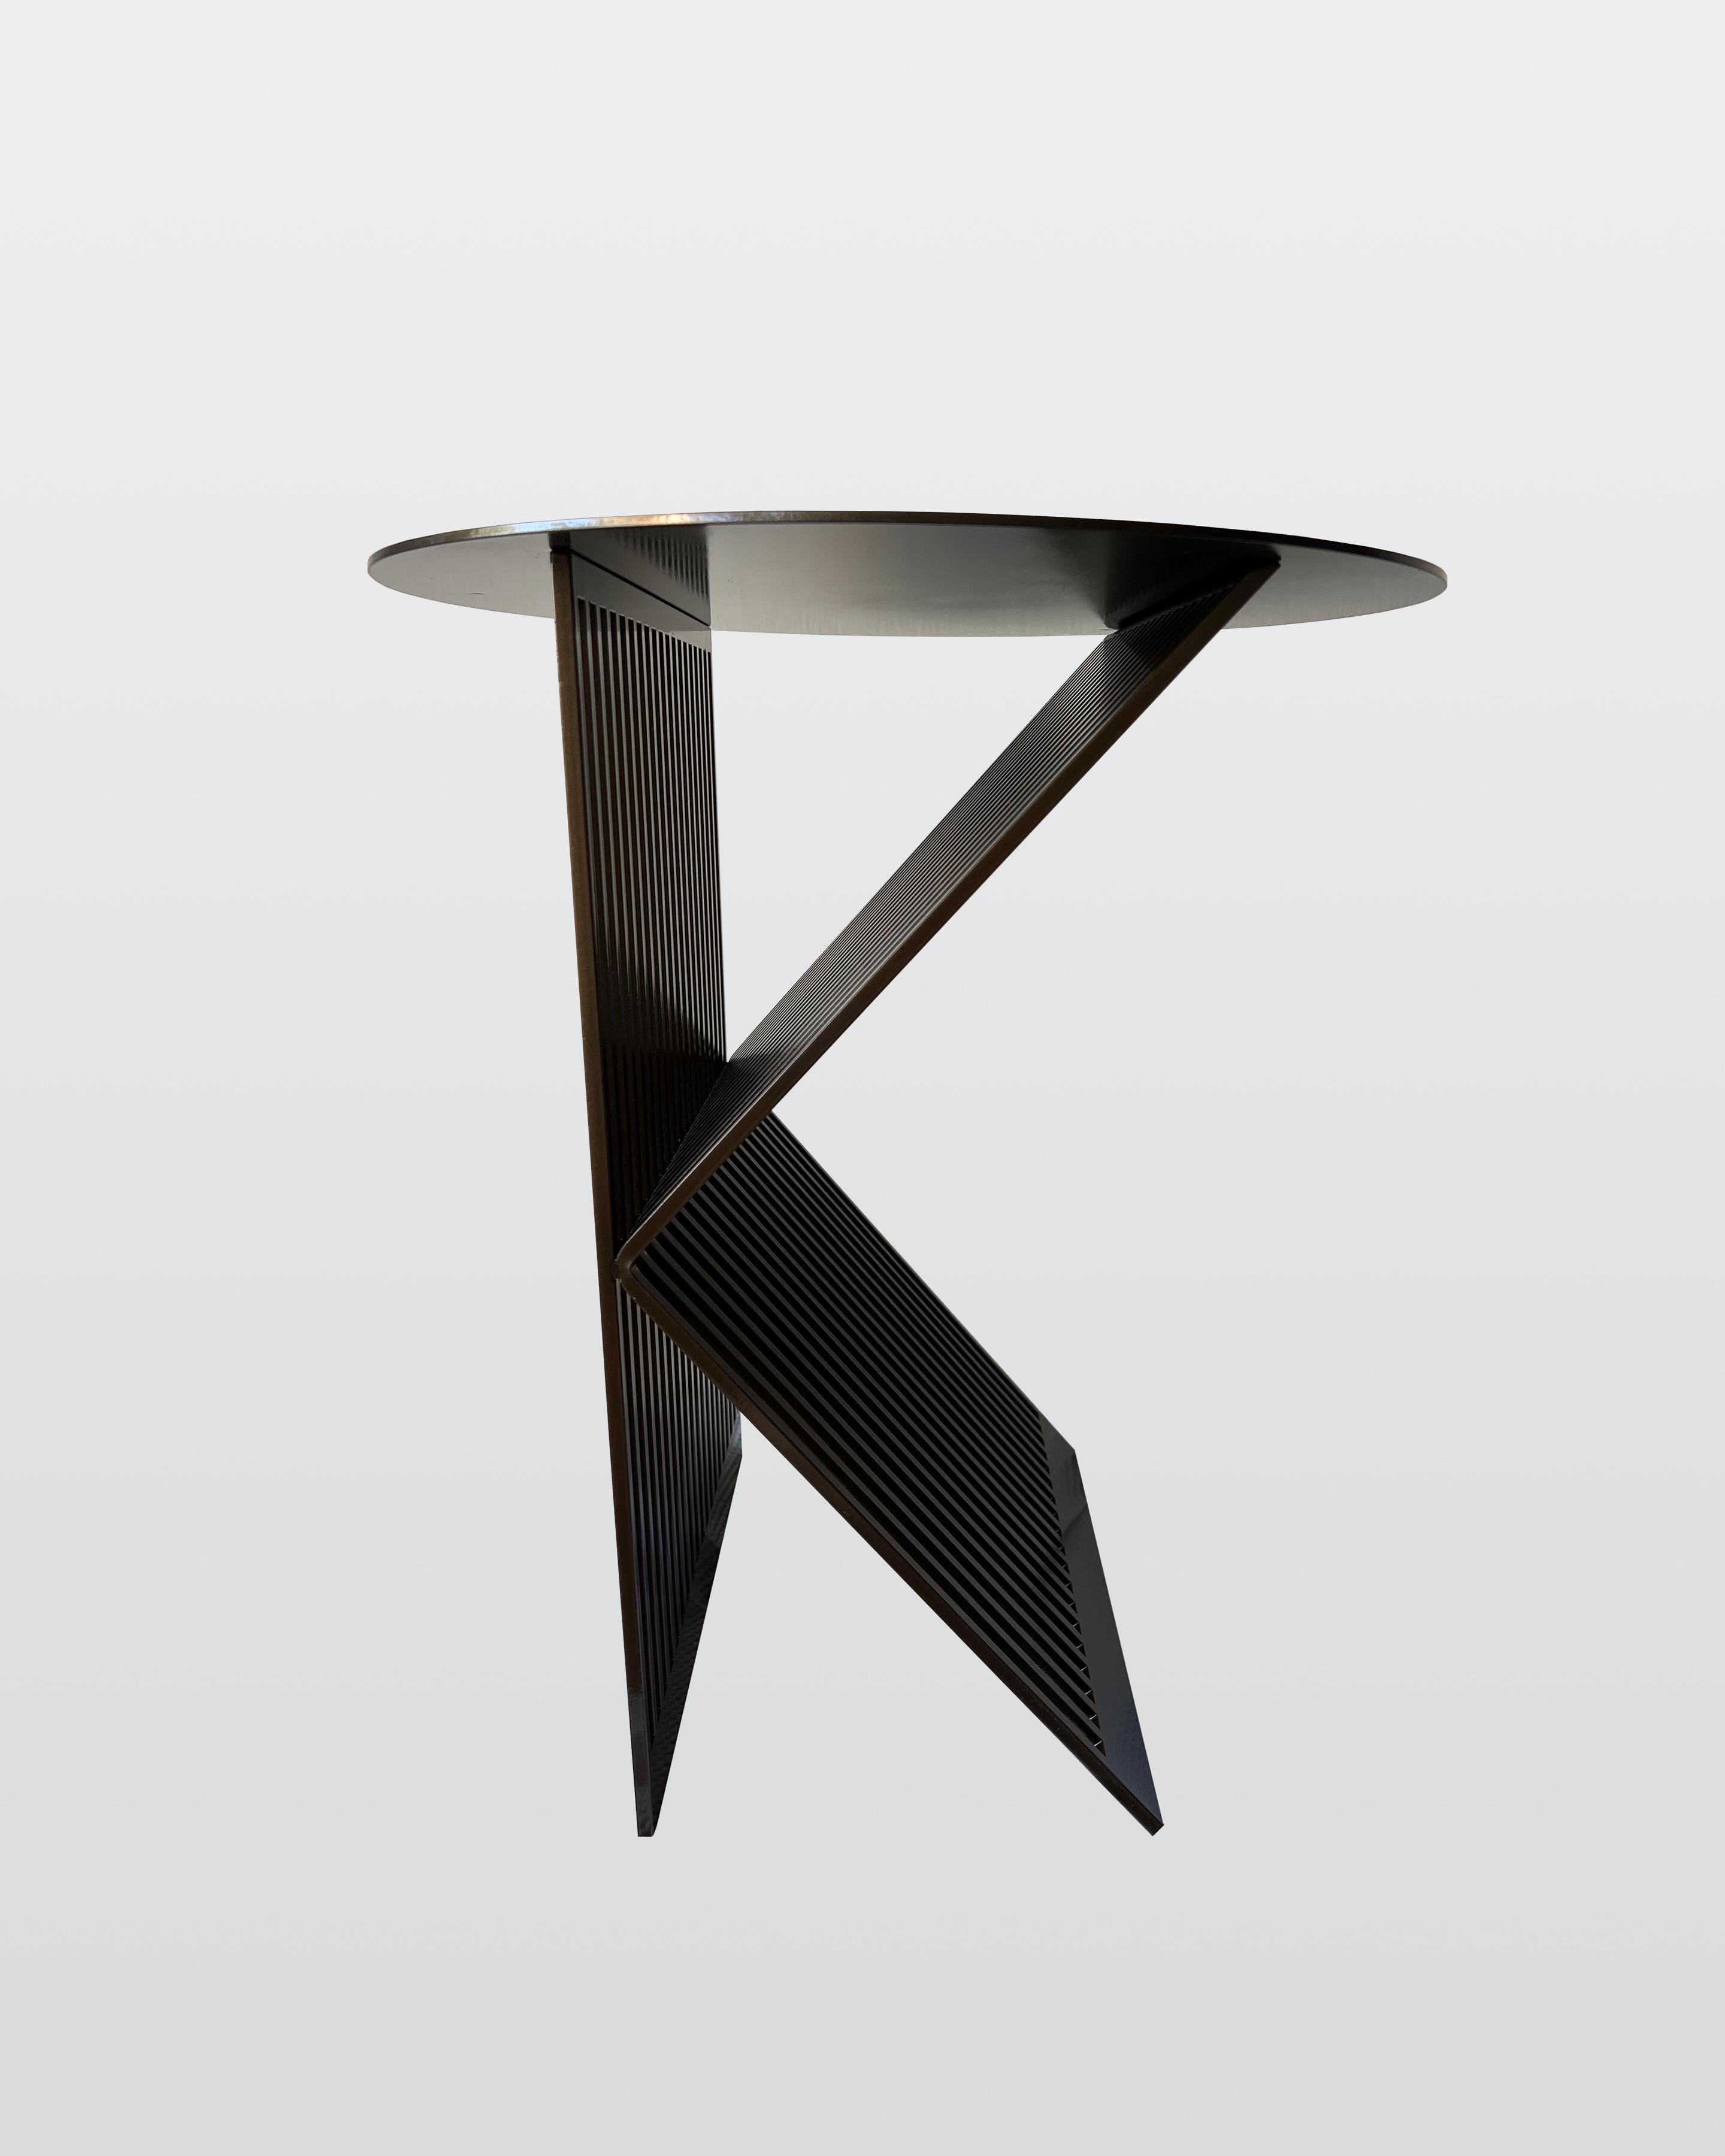 Les lignes contemporaines des tables K.K s'inspirent directement d'une passion personnelle pour l'architecture. Incorporant un rythme entre le solide et le vide, la continuation des tiges d'acier prolonge une voix silencieuse entre la lumière et